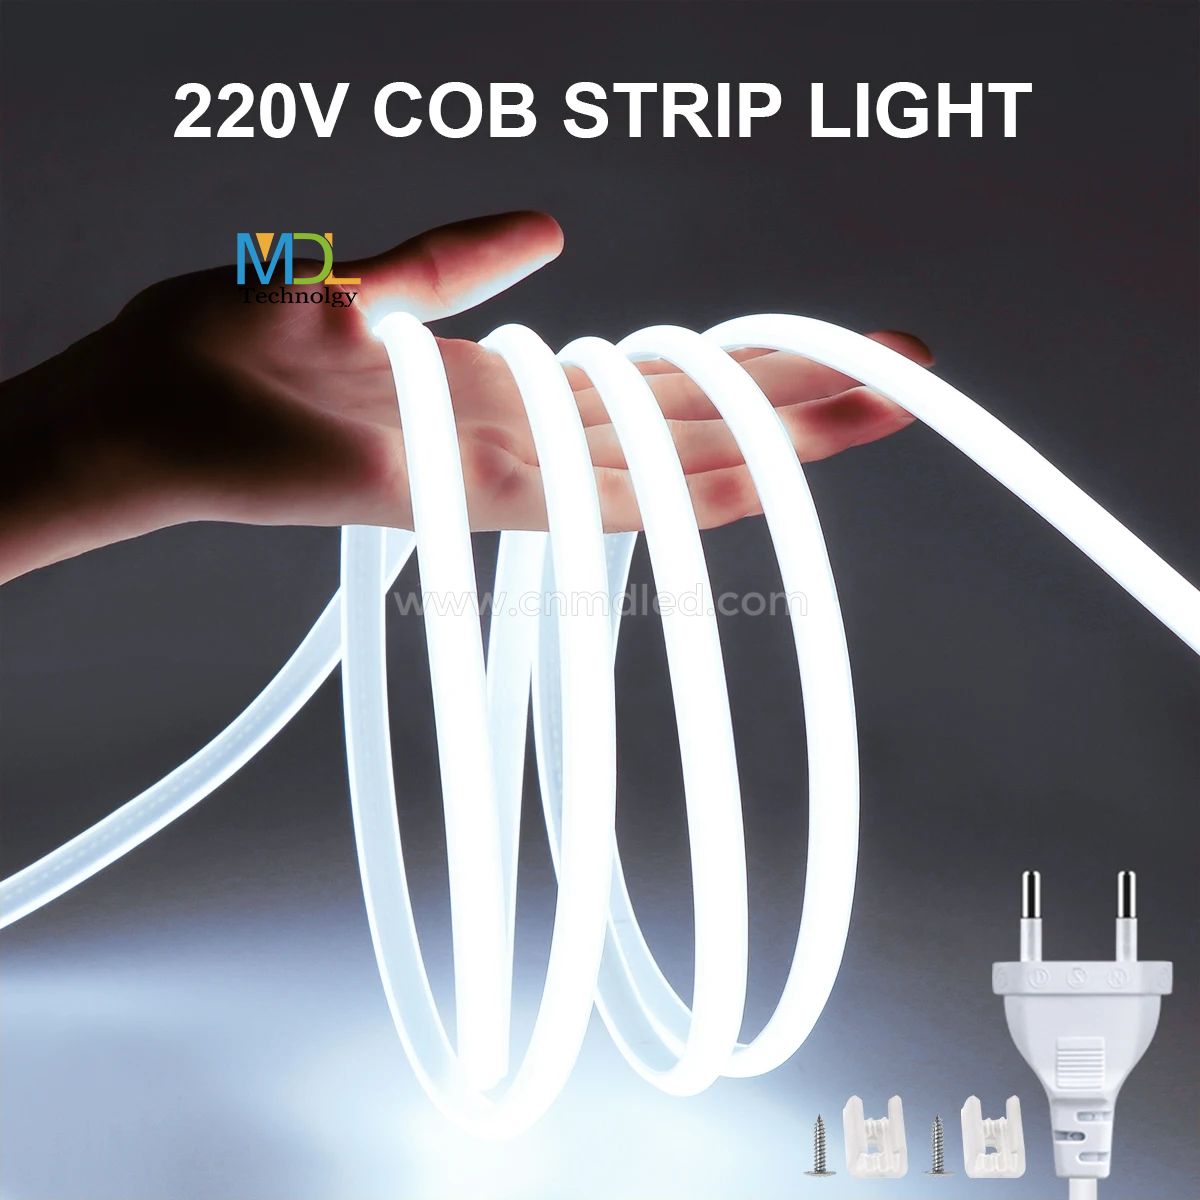 COB LED Strip Light 110V 220V MDL-STL220V-COB